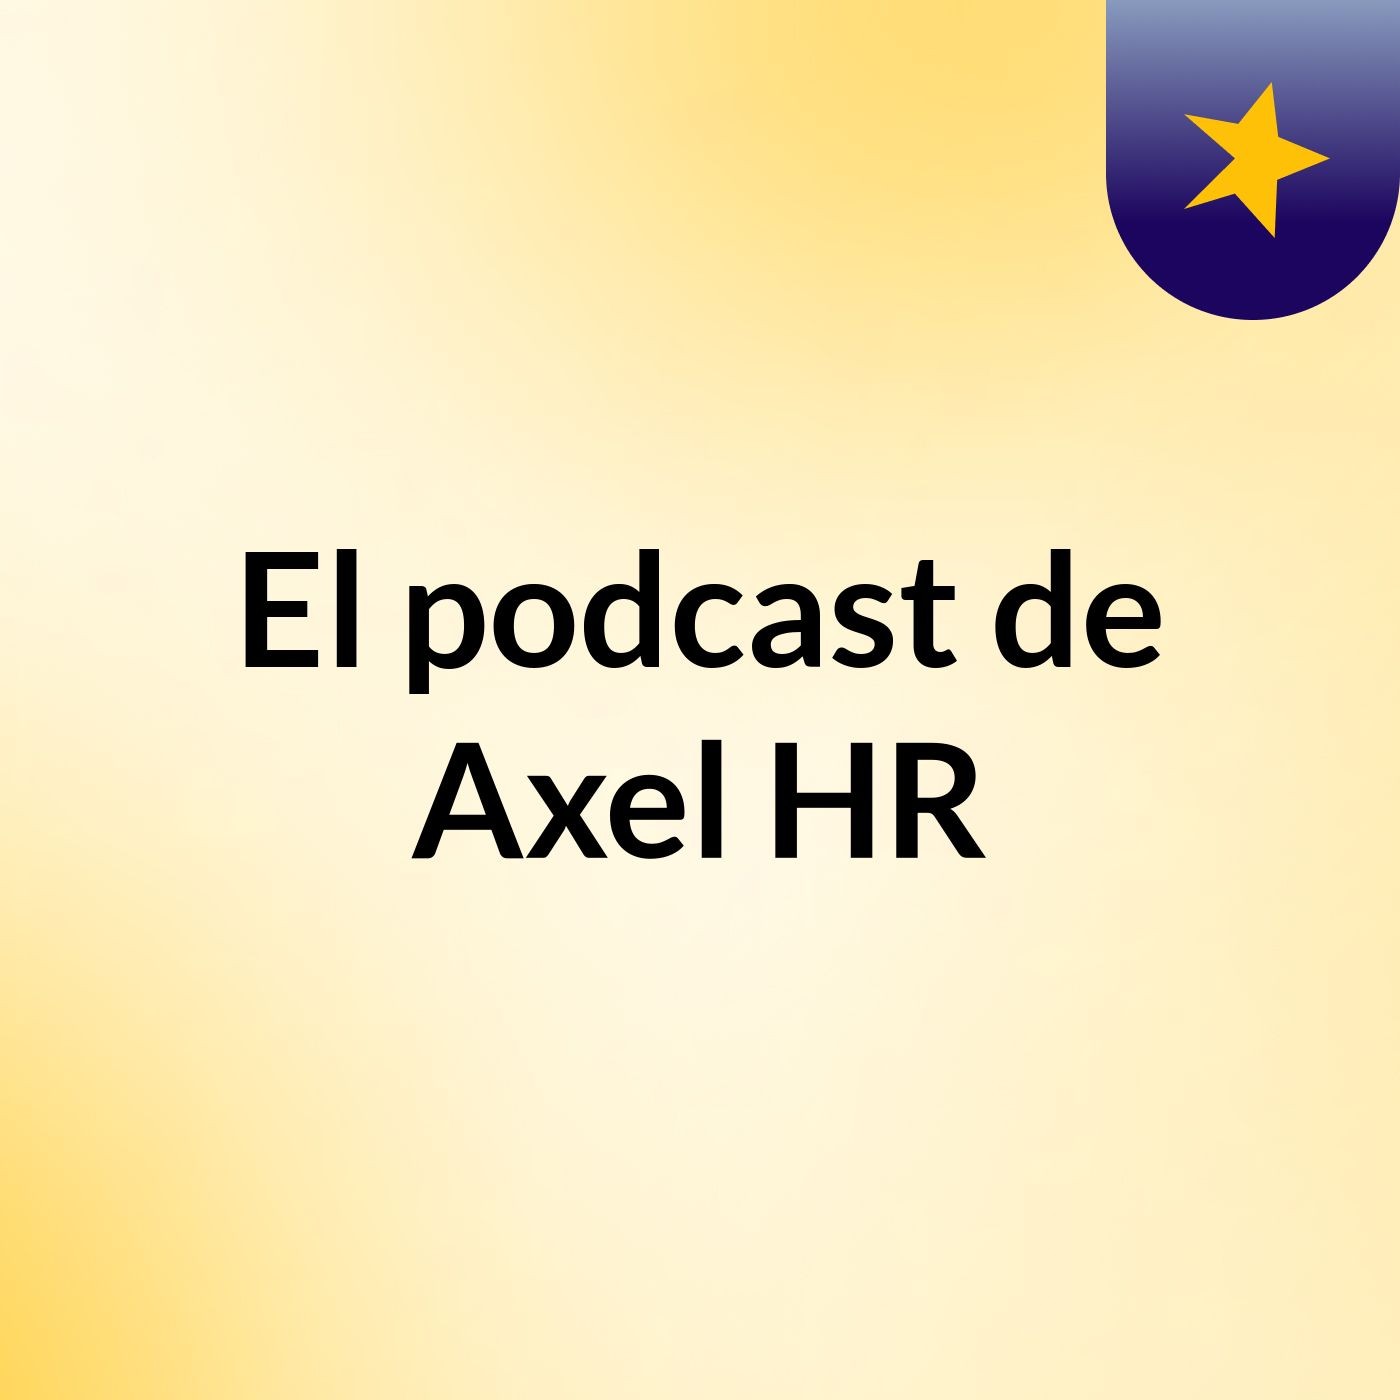 Episodio 4 - El podcast de Axel HR